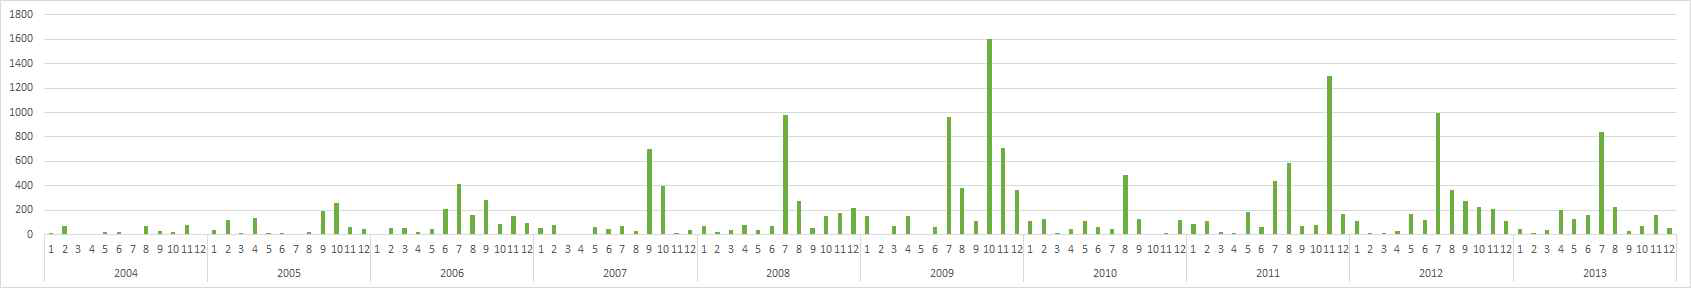 환경부 수질측정망 (현도)의 최근 10년간 총대장균군 분포